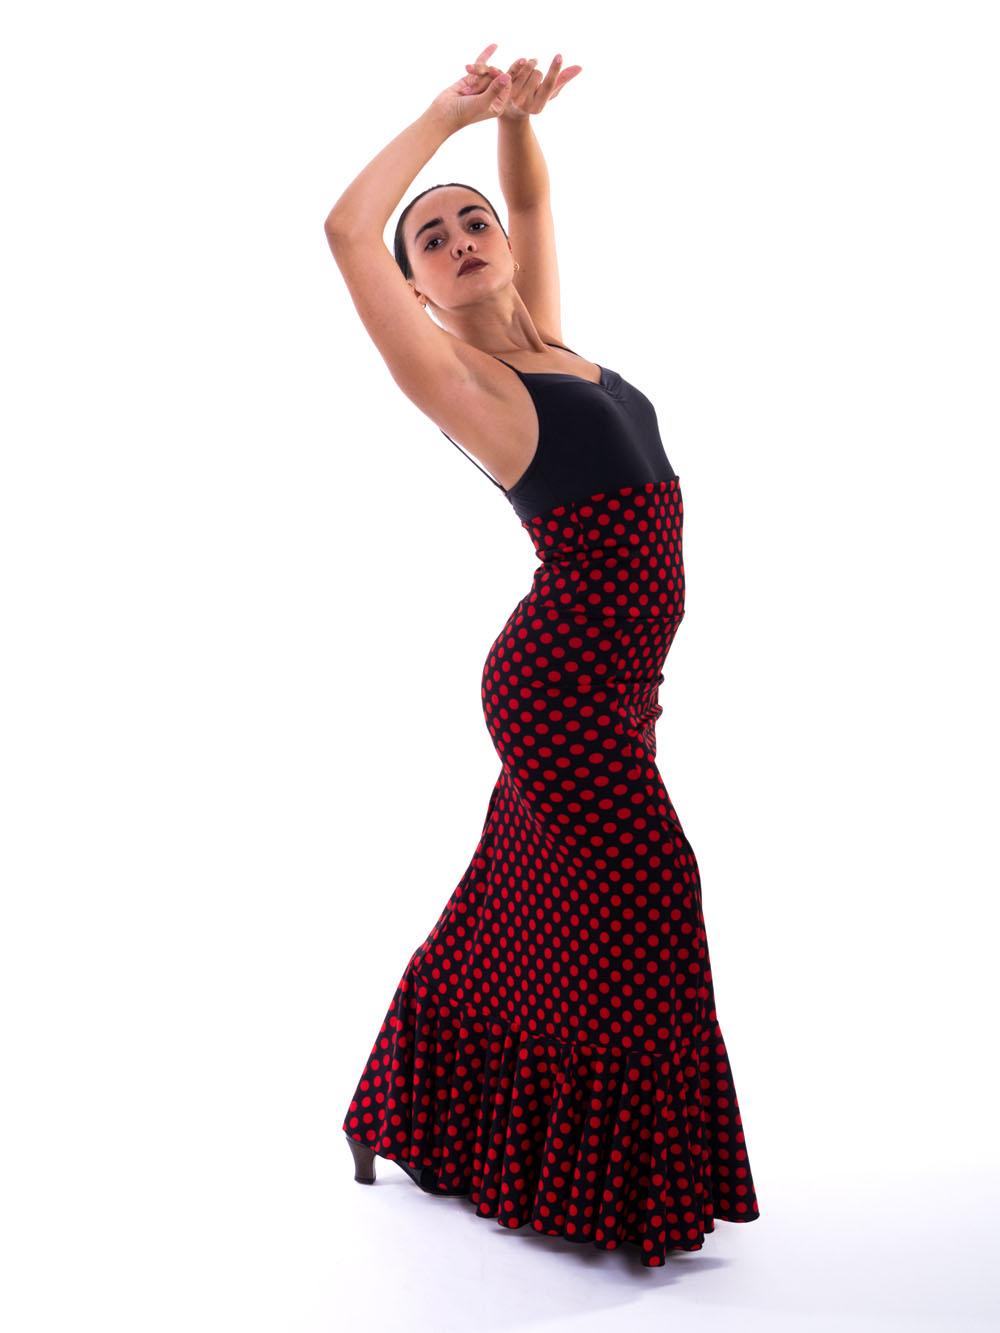 Falda Baile Flamenco profesional y ensayo al mejor precio EF389